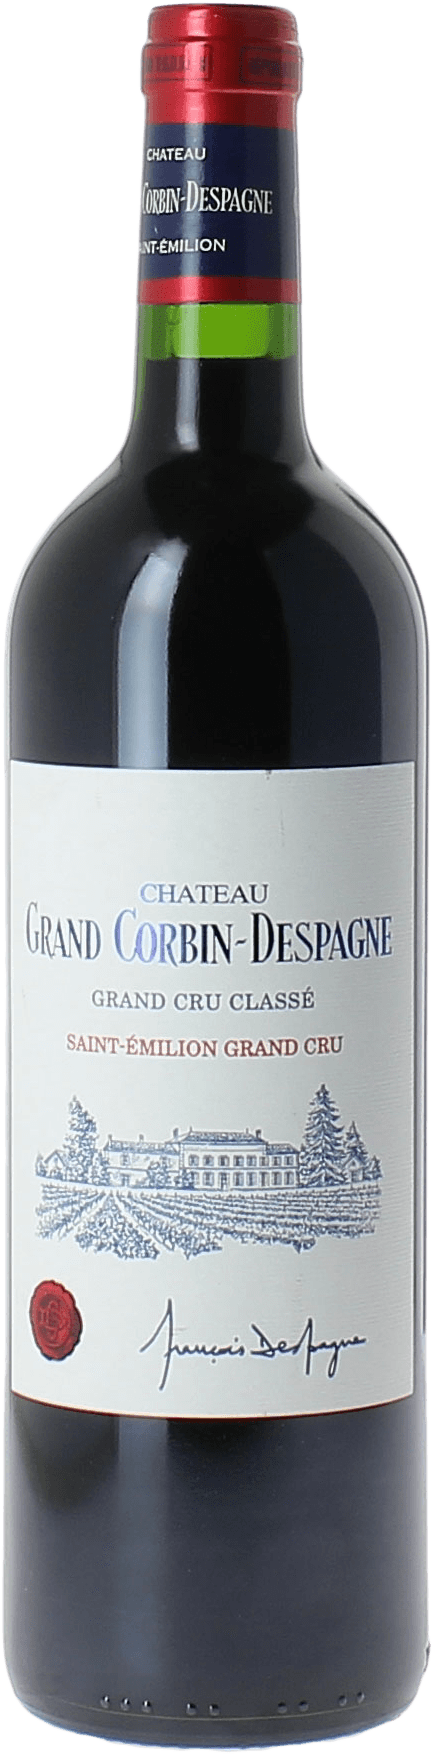 Grand corbin-despagne 1999 Grand cru class Saint-Emilion, Bordeaux rouge